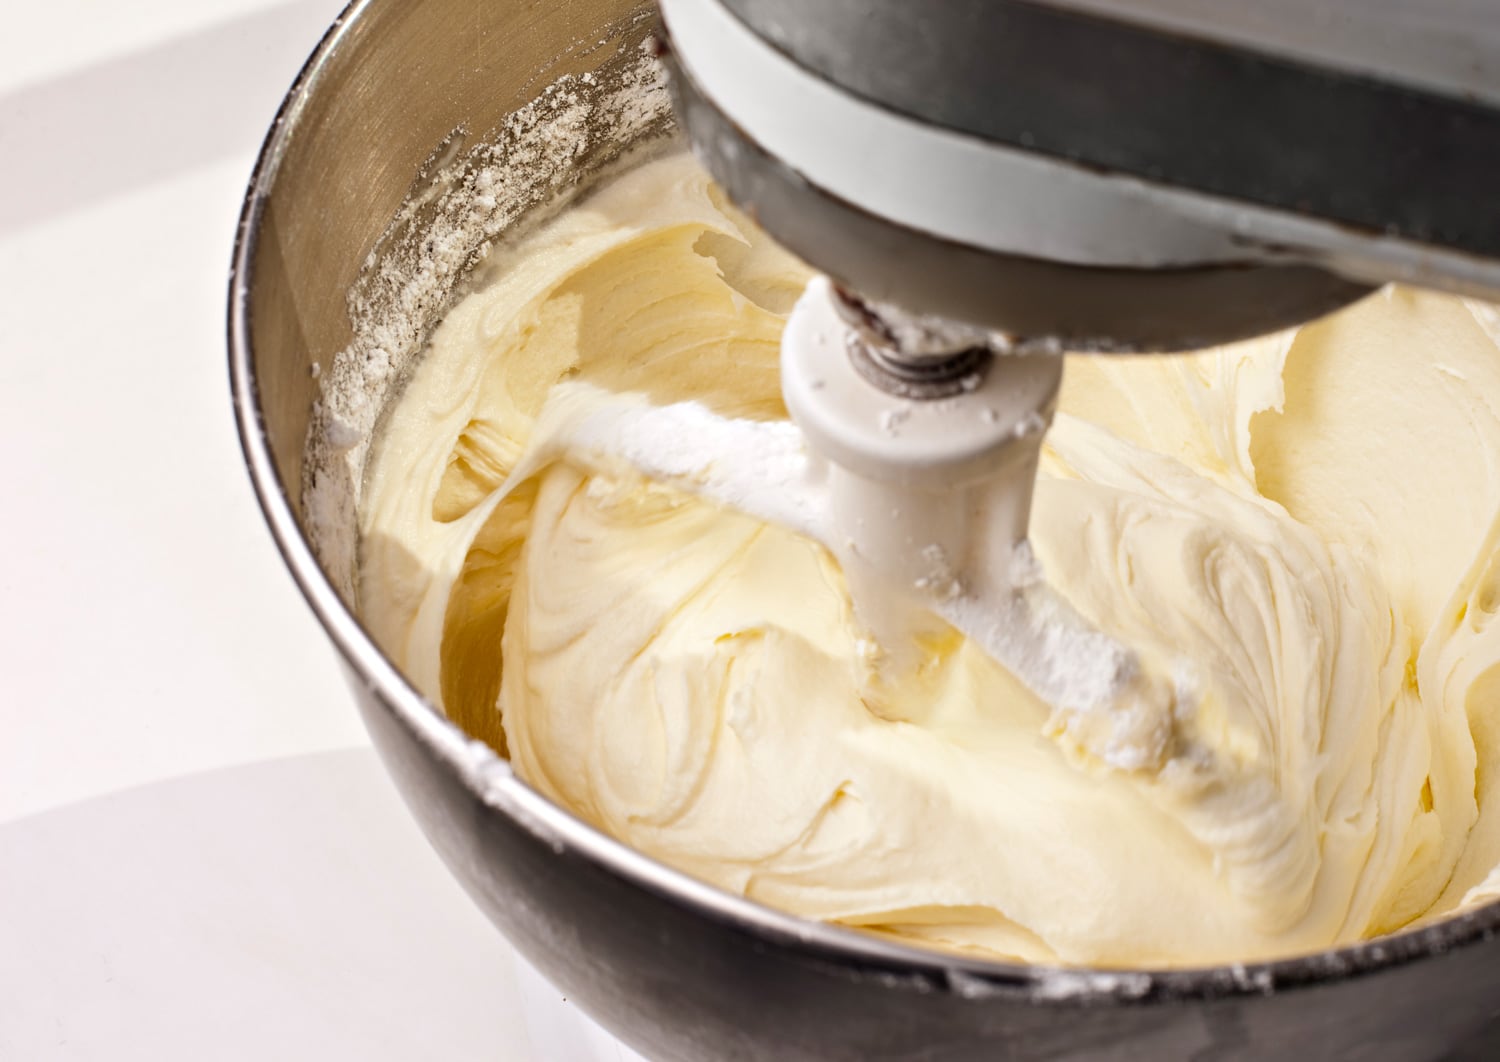 电动搅拌机混合黄柠檬奶油乳酪蛋糕糖霜。